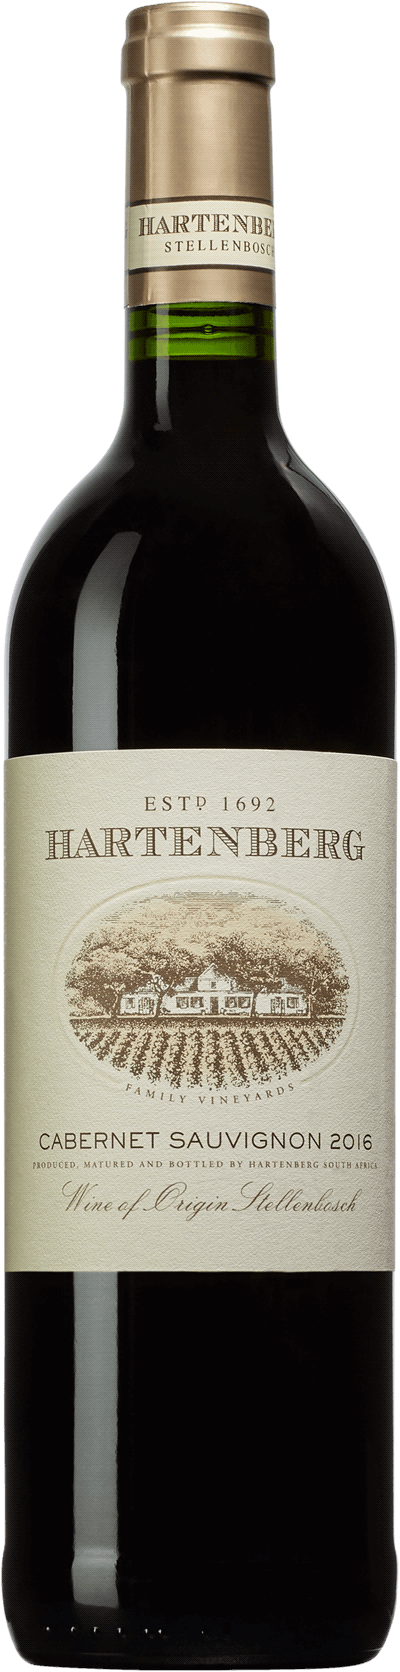 Hartenberg rött vin